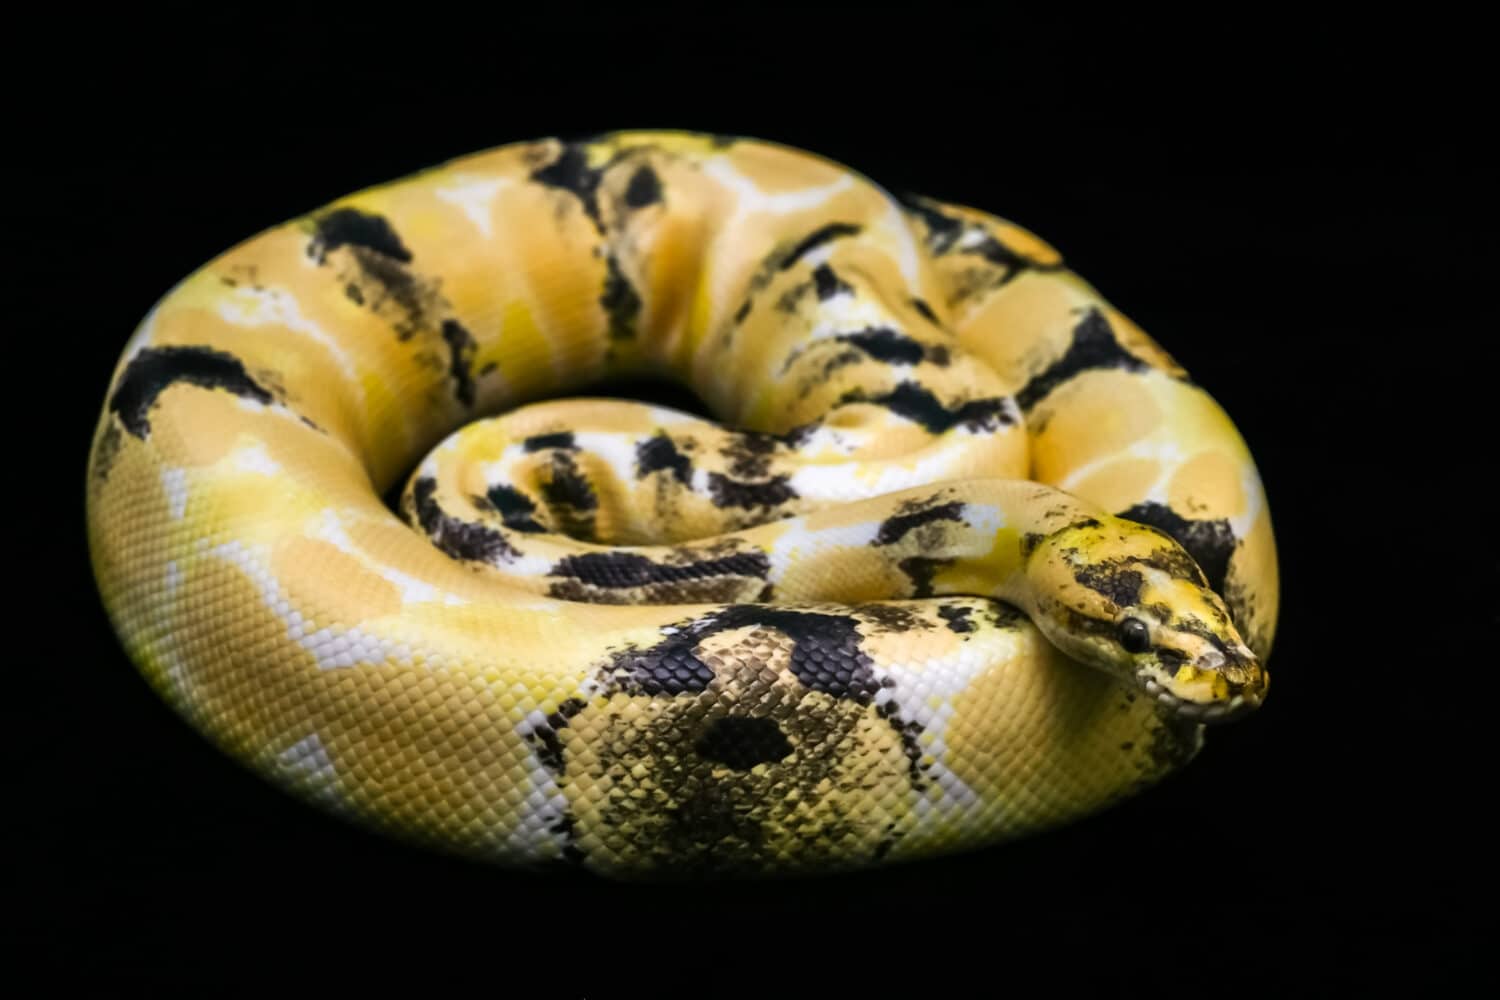 Paradox calico morph Ball python (python regius) su sfondo nero.  Immagine di un bellissimo serpente per animali domestici esotici o custode di rettili.  Fantastico motivo sulla pelle di serpente.